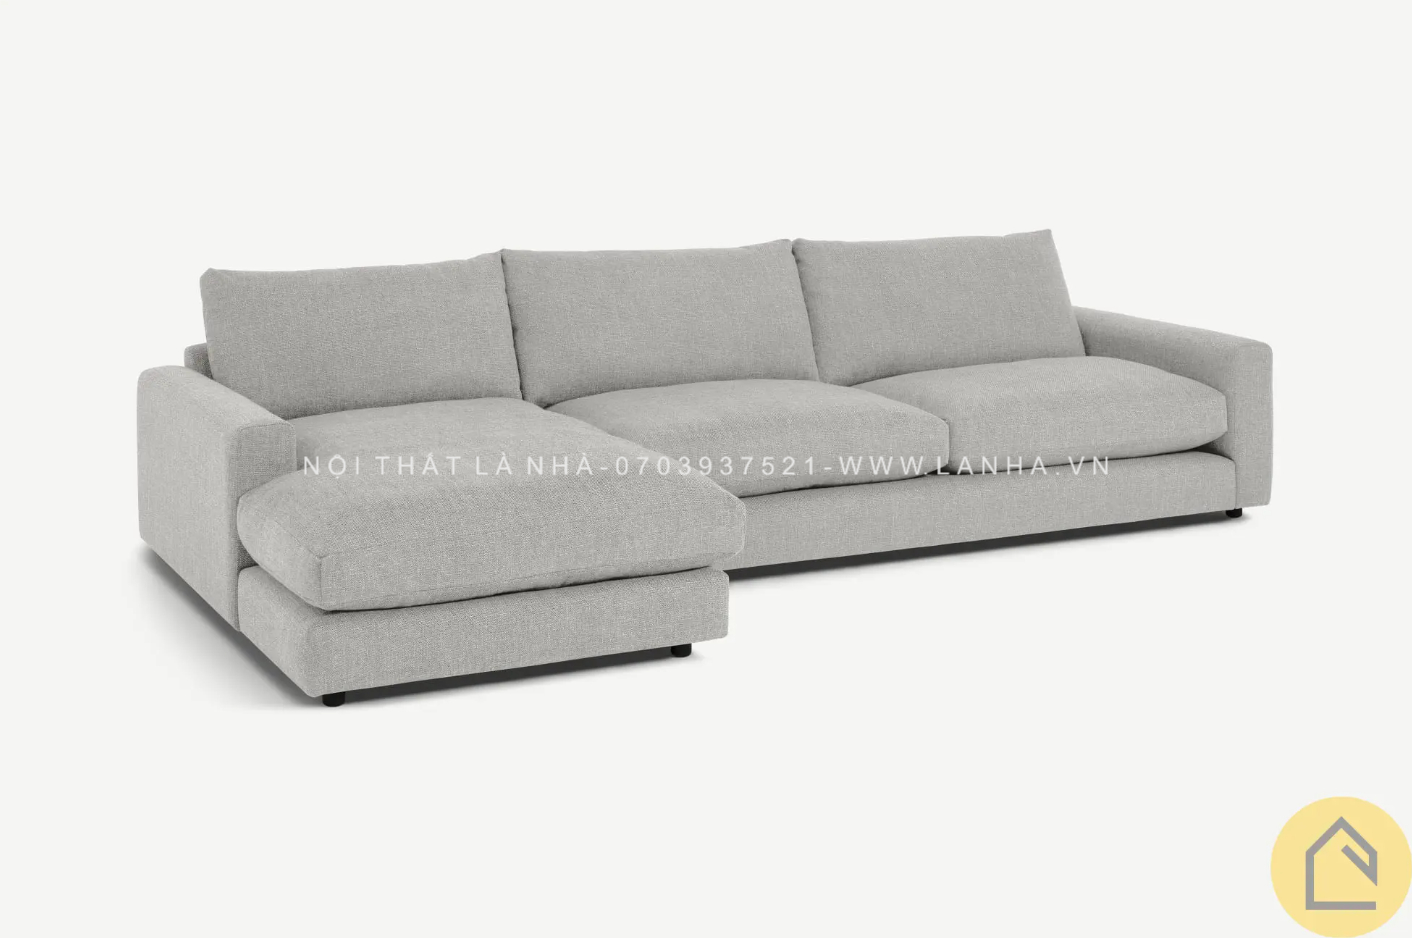 Sofa góc thiết kế chữ L vừa rộng rãi, vừa mềm mại